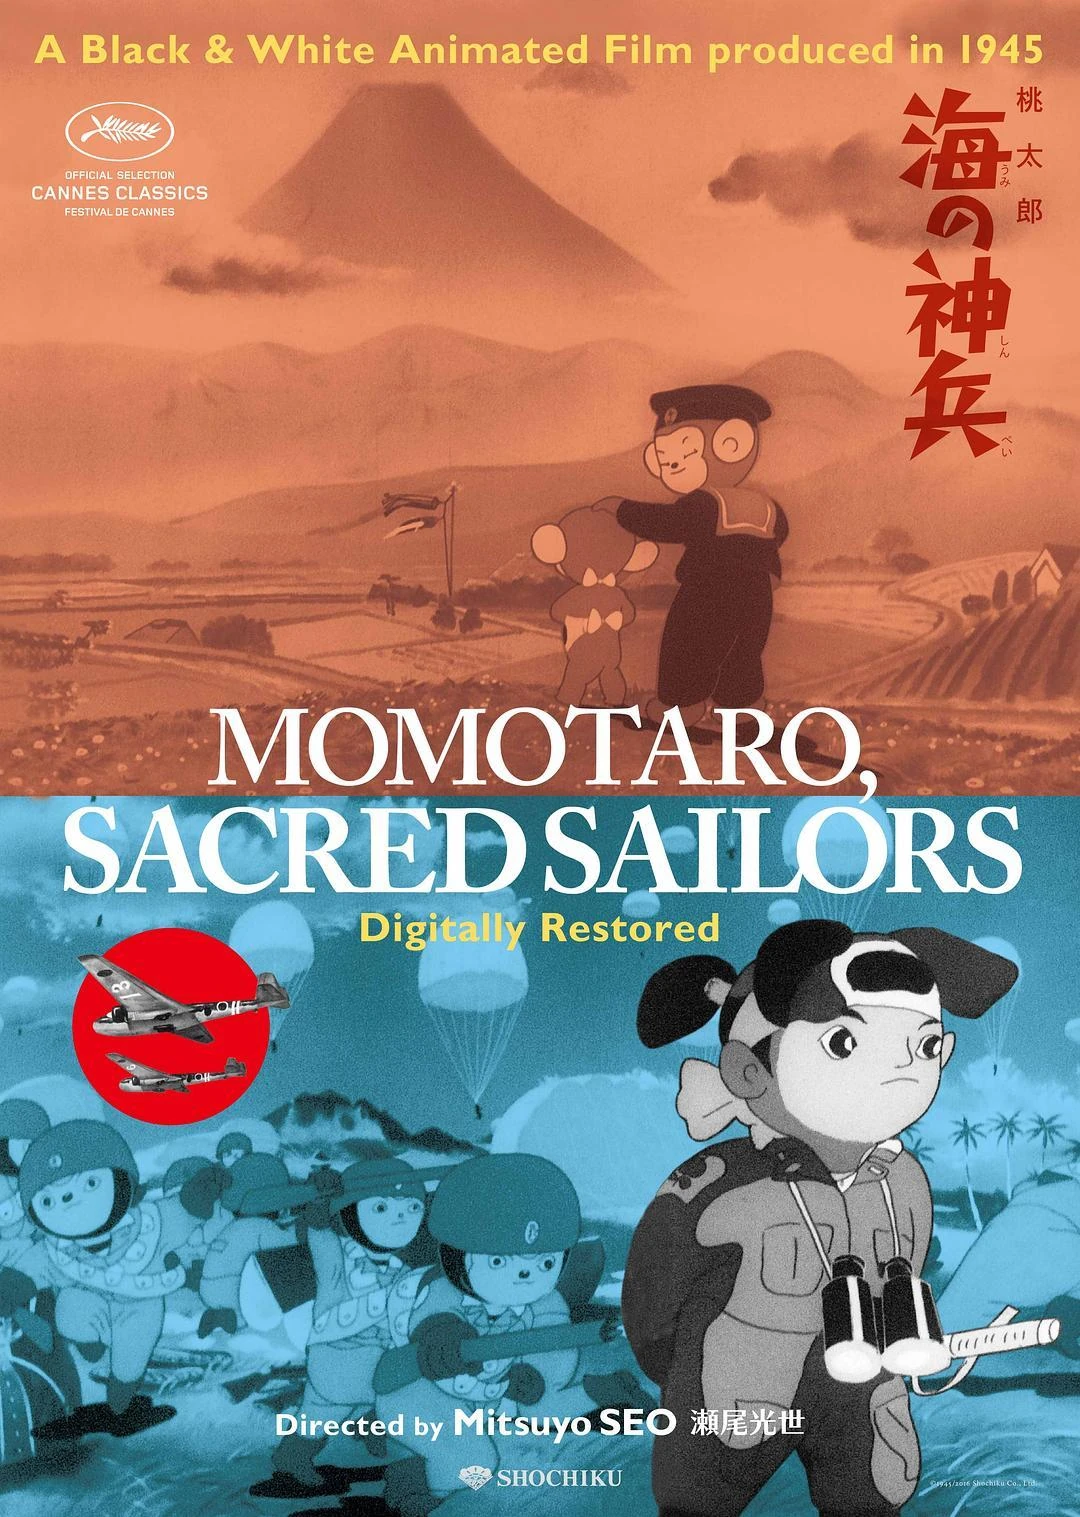 Momotarou: Umi no Shinpei Poster